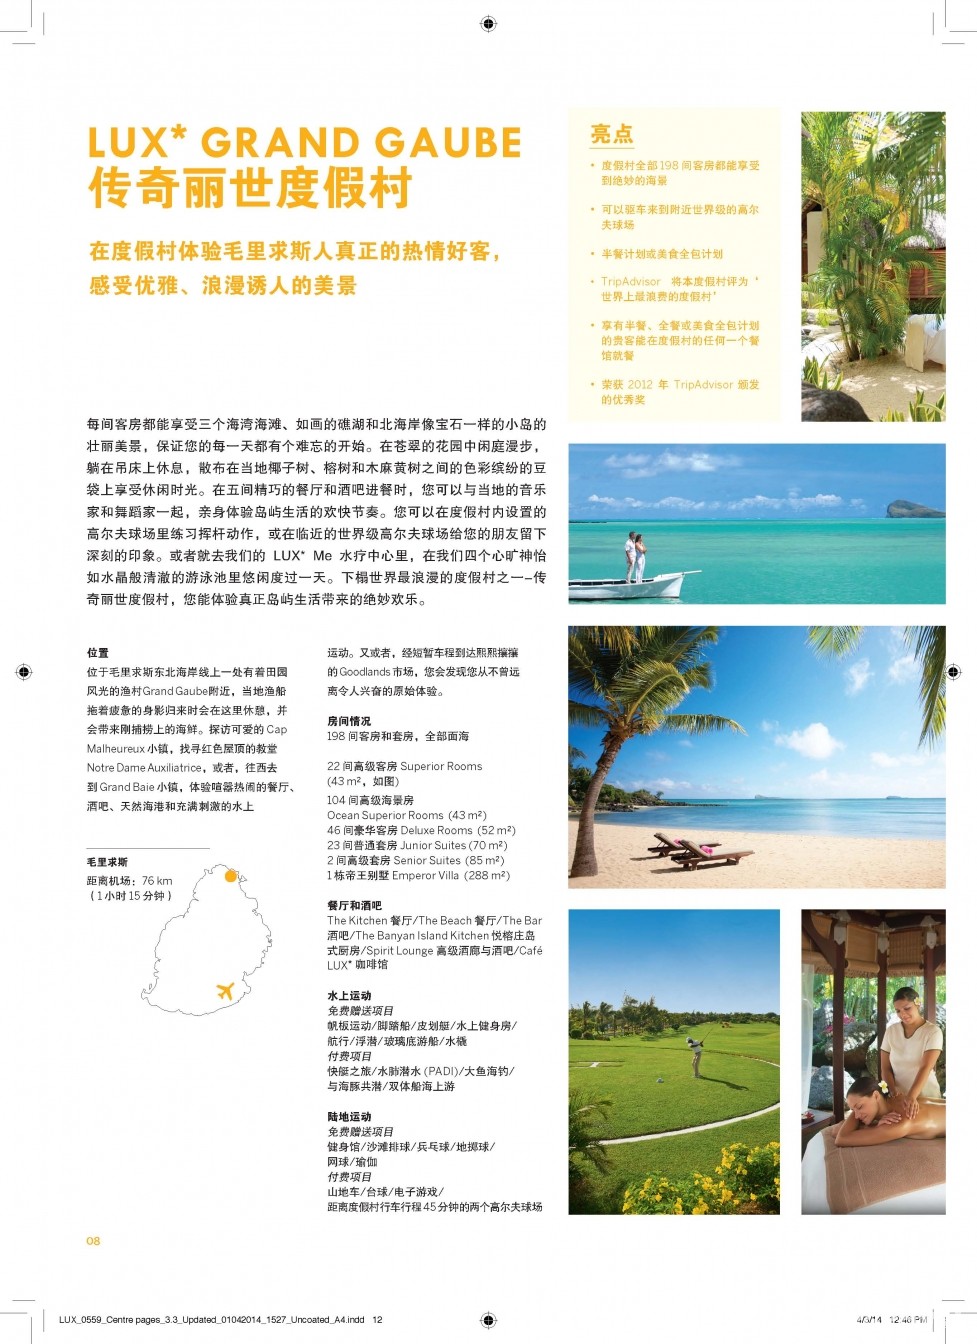 Ƶ LUX Resorts Info 12.jpg